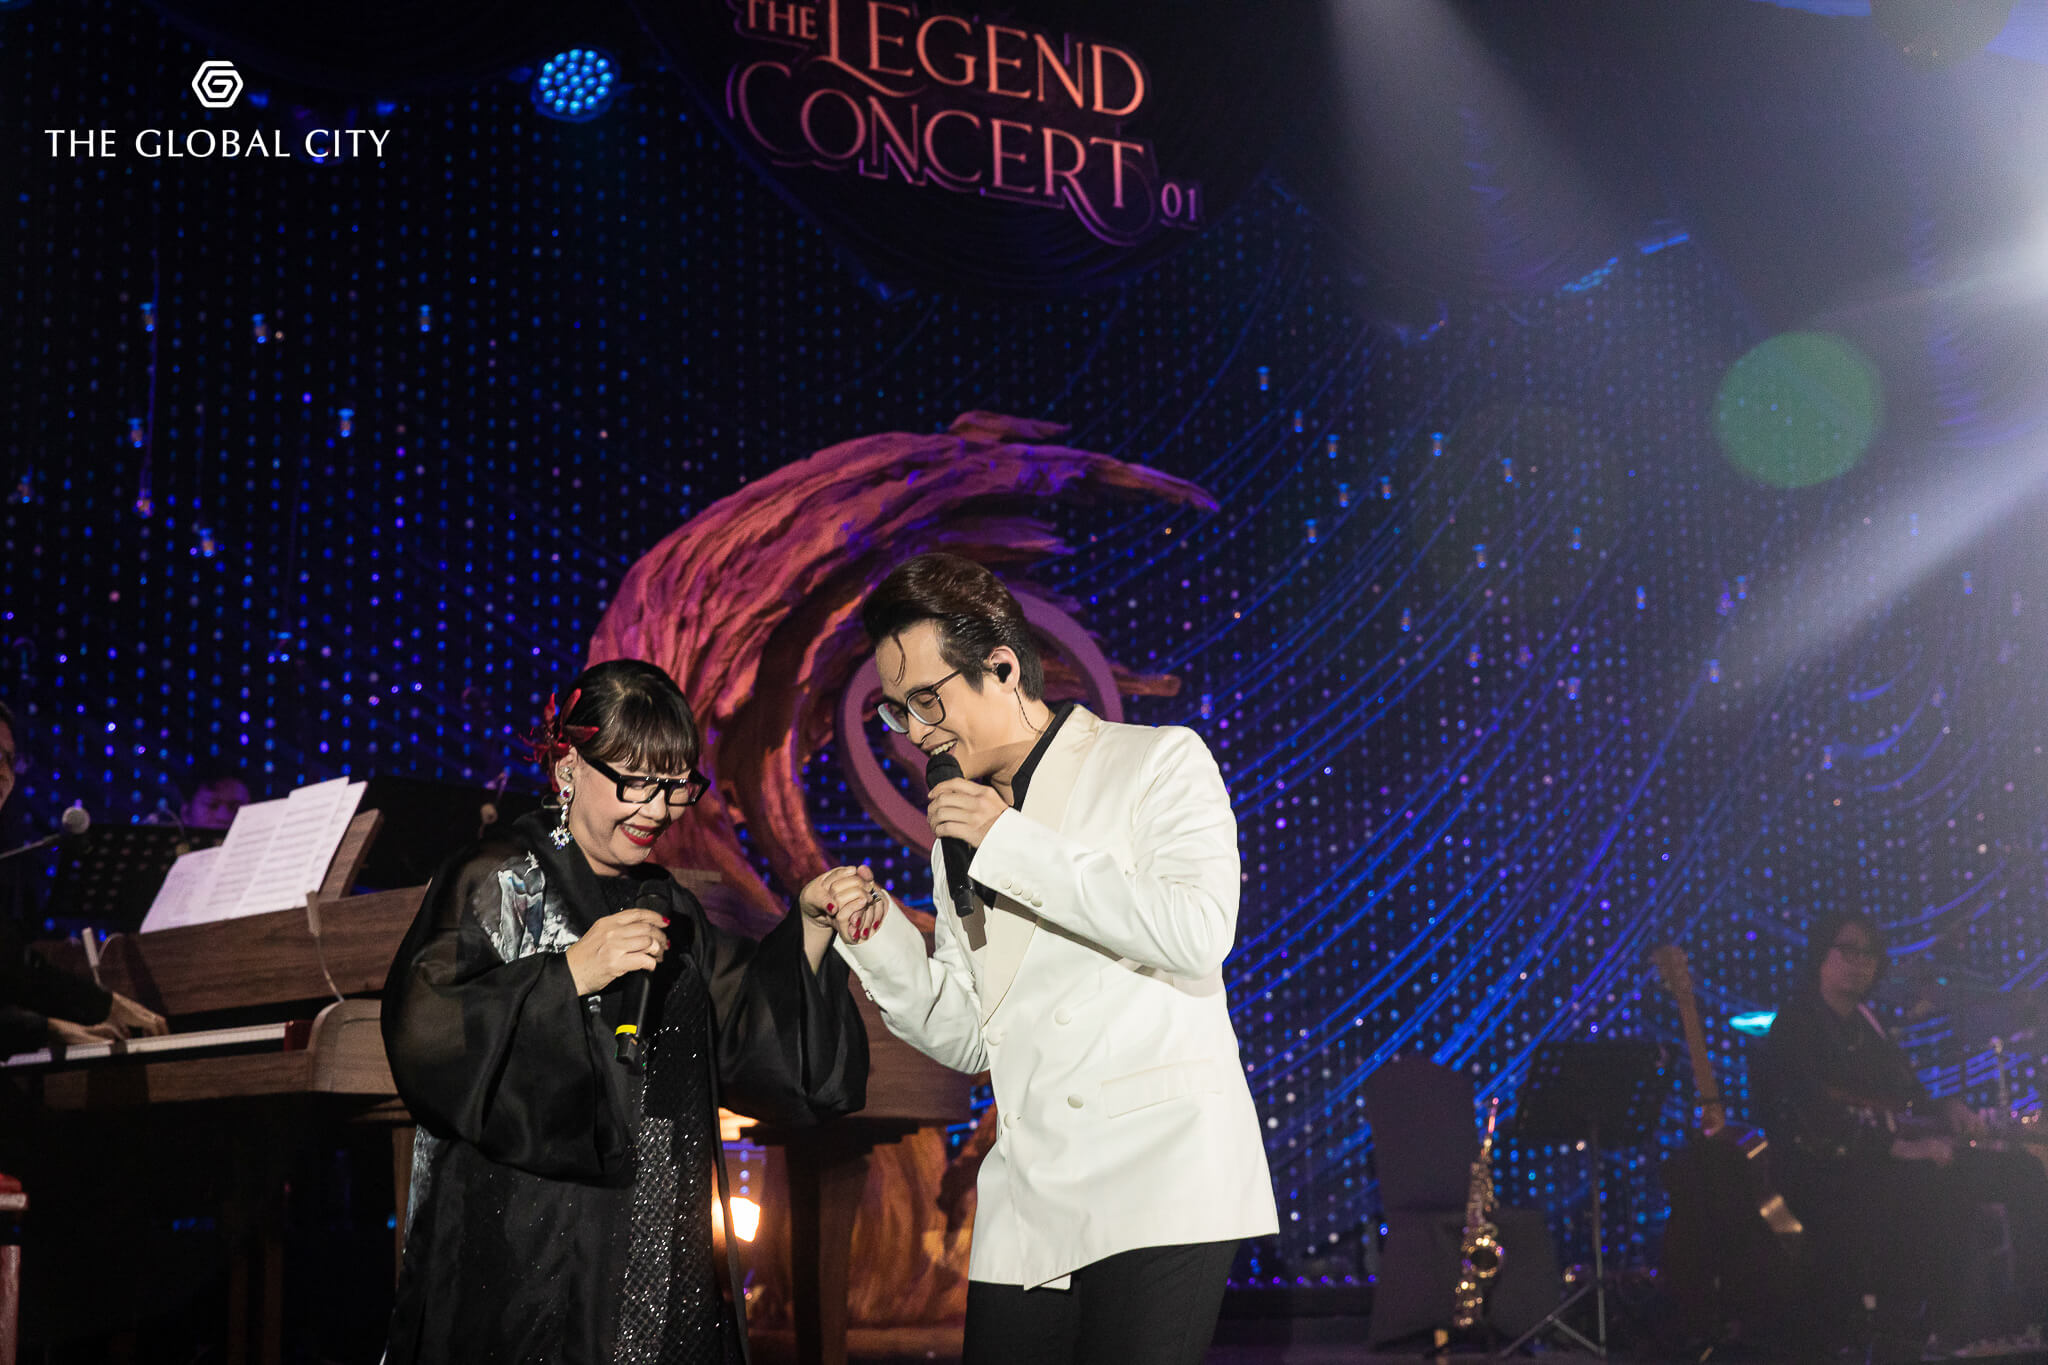 Sự kiện triển lãm The Legend Concert 01 - Trịnh Công Sơn